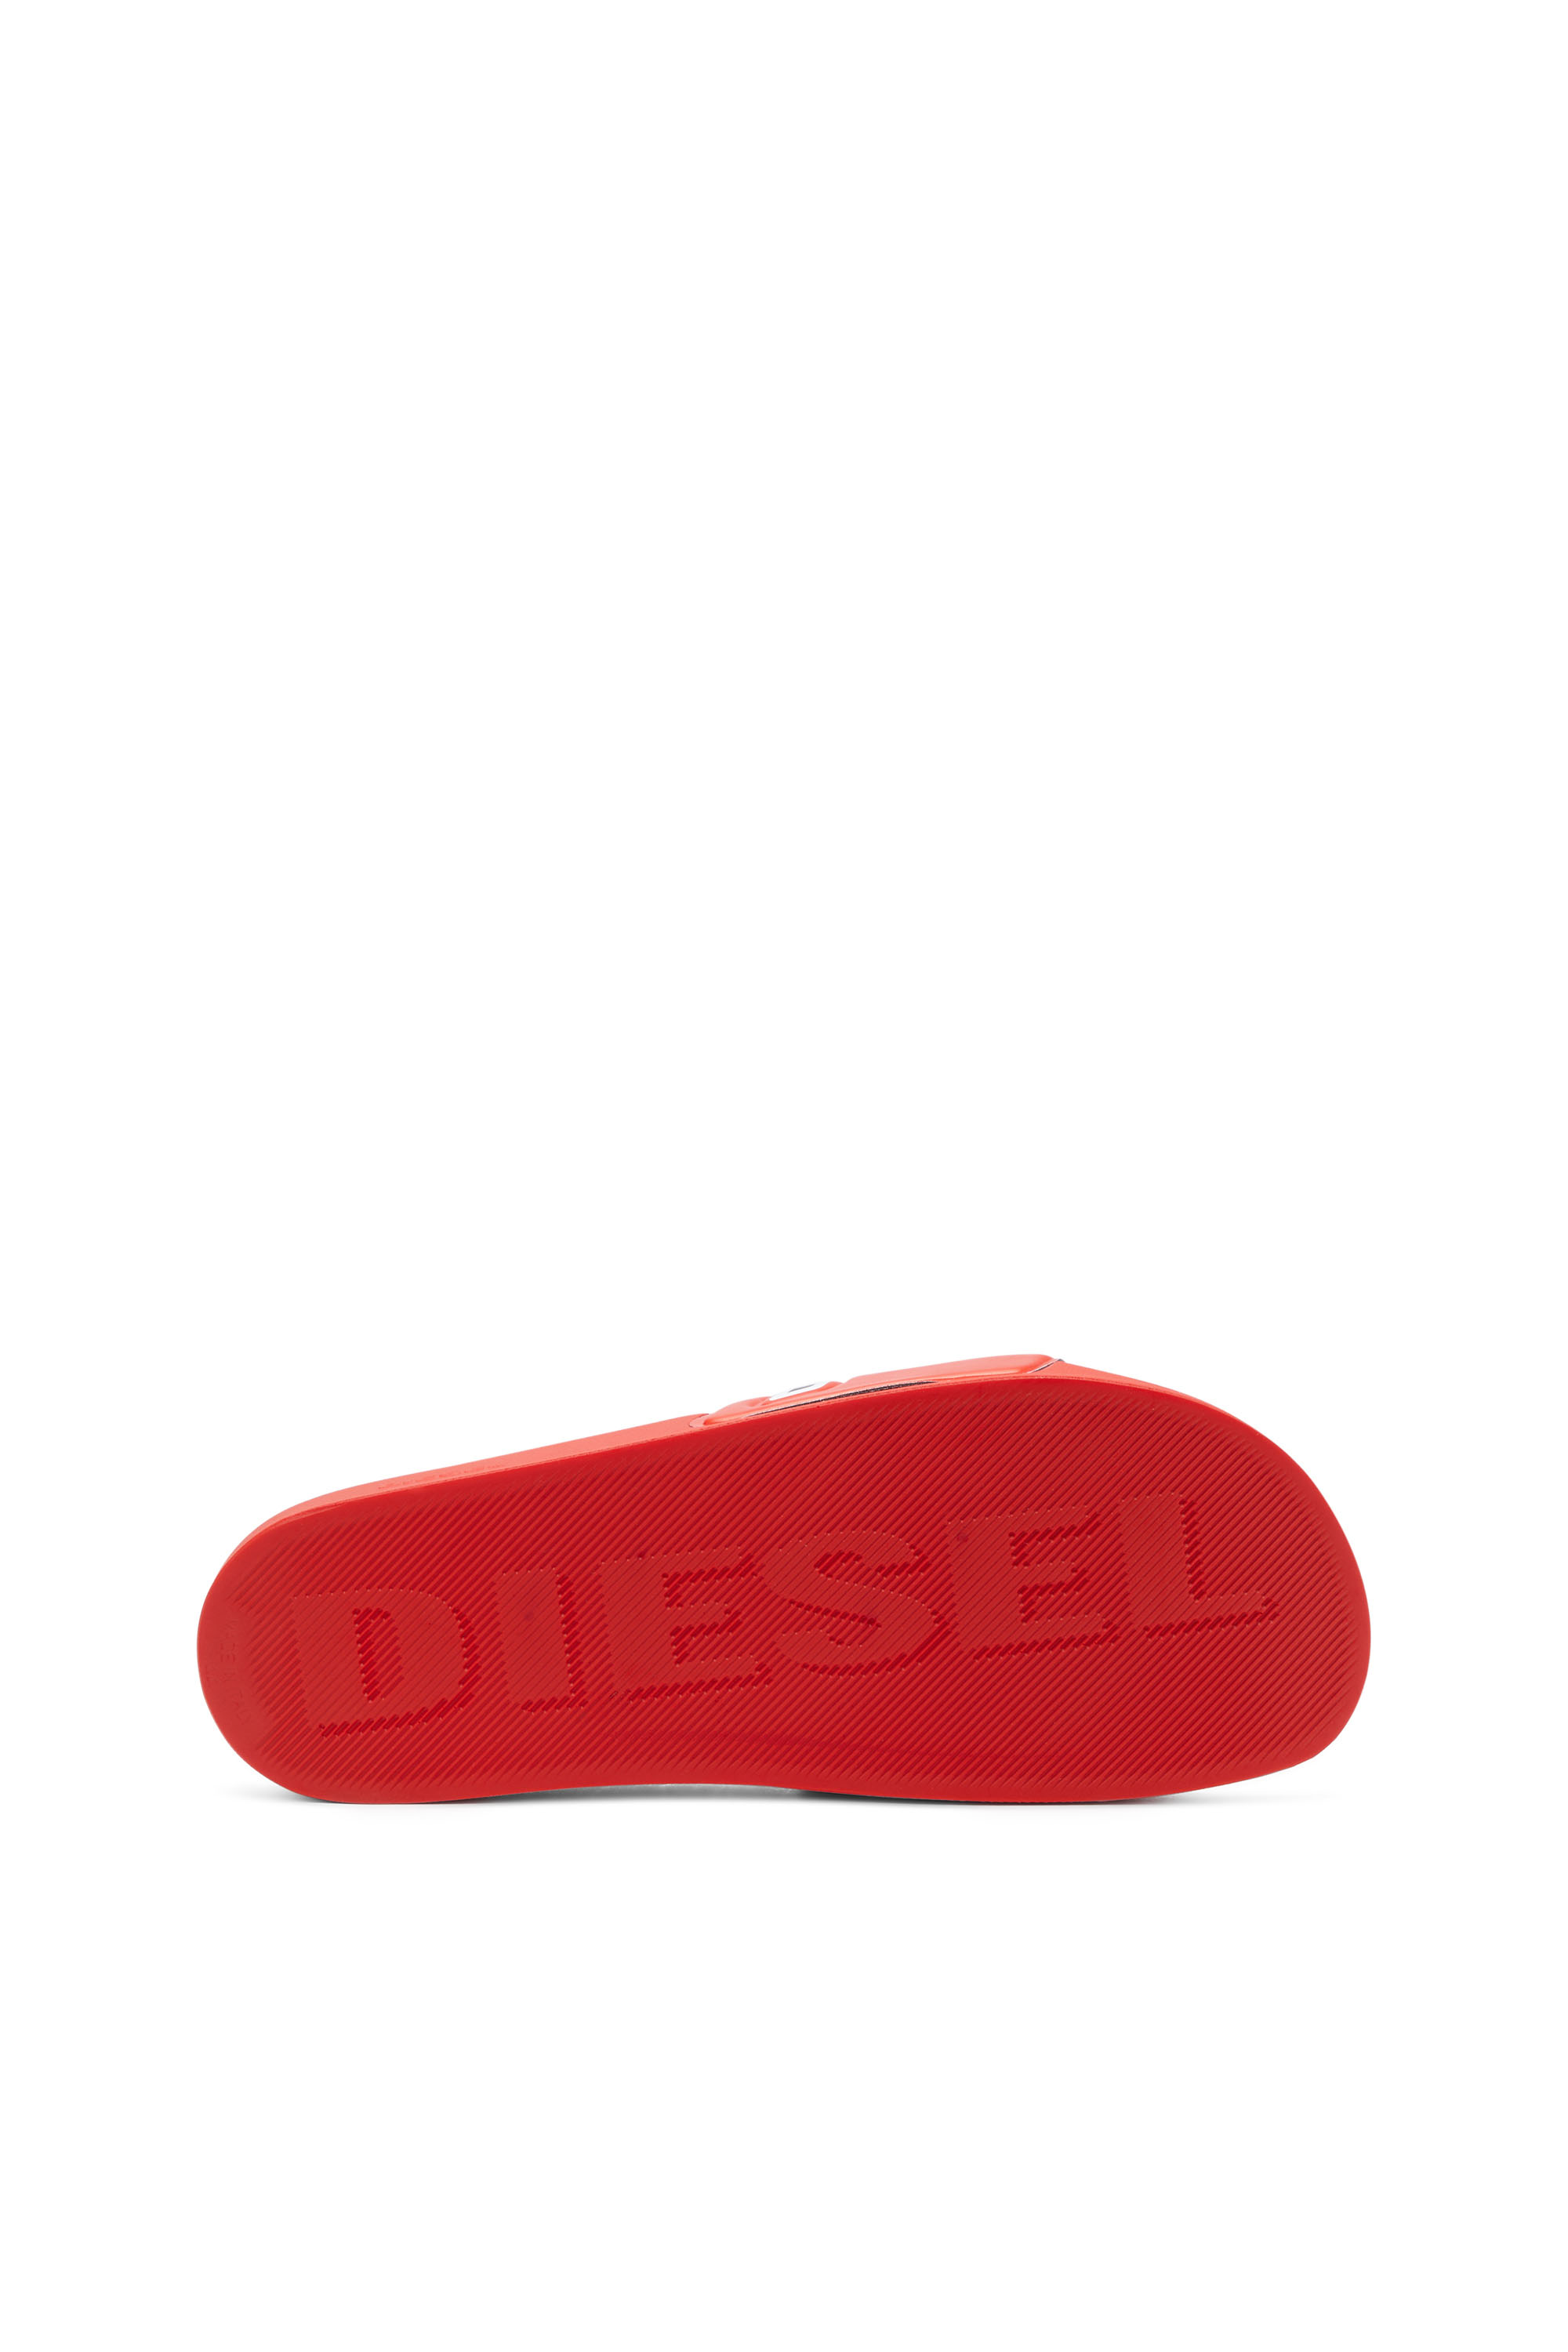 Diesel - SA-MAYEMI D, Nero/Rosso - Image 4